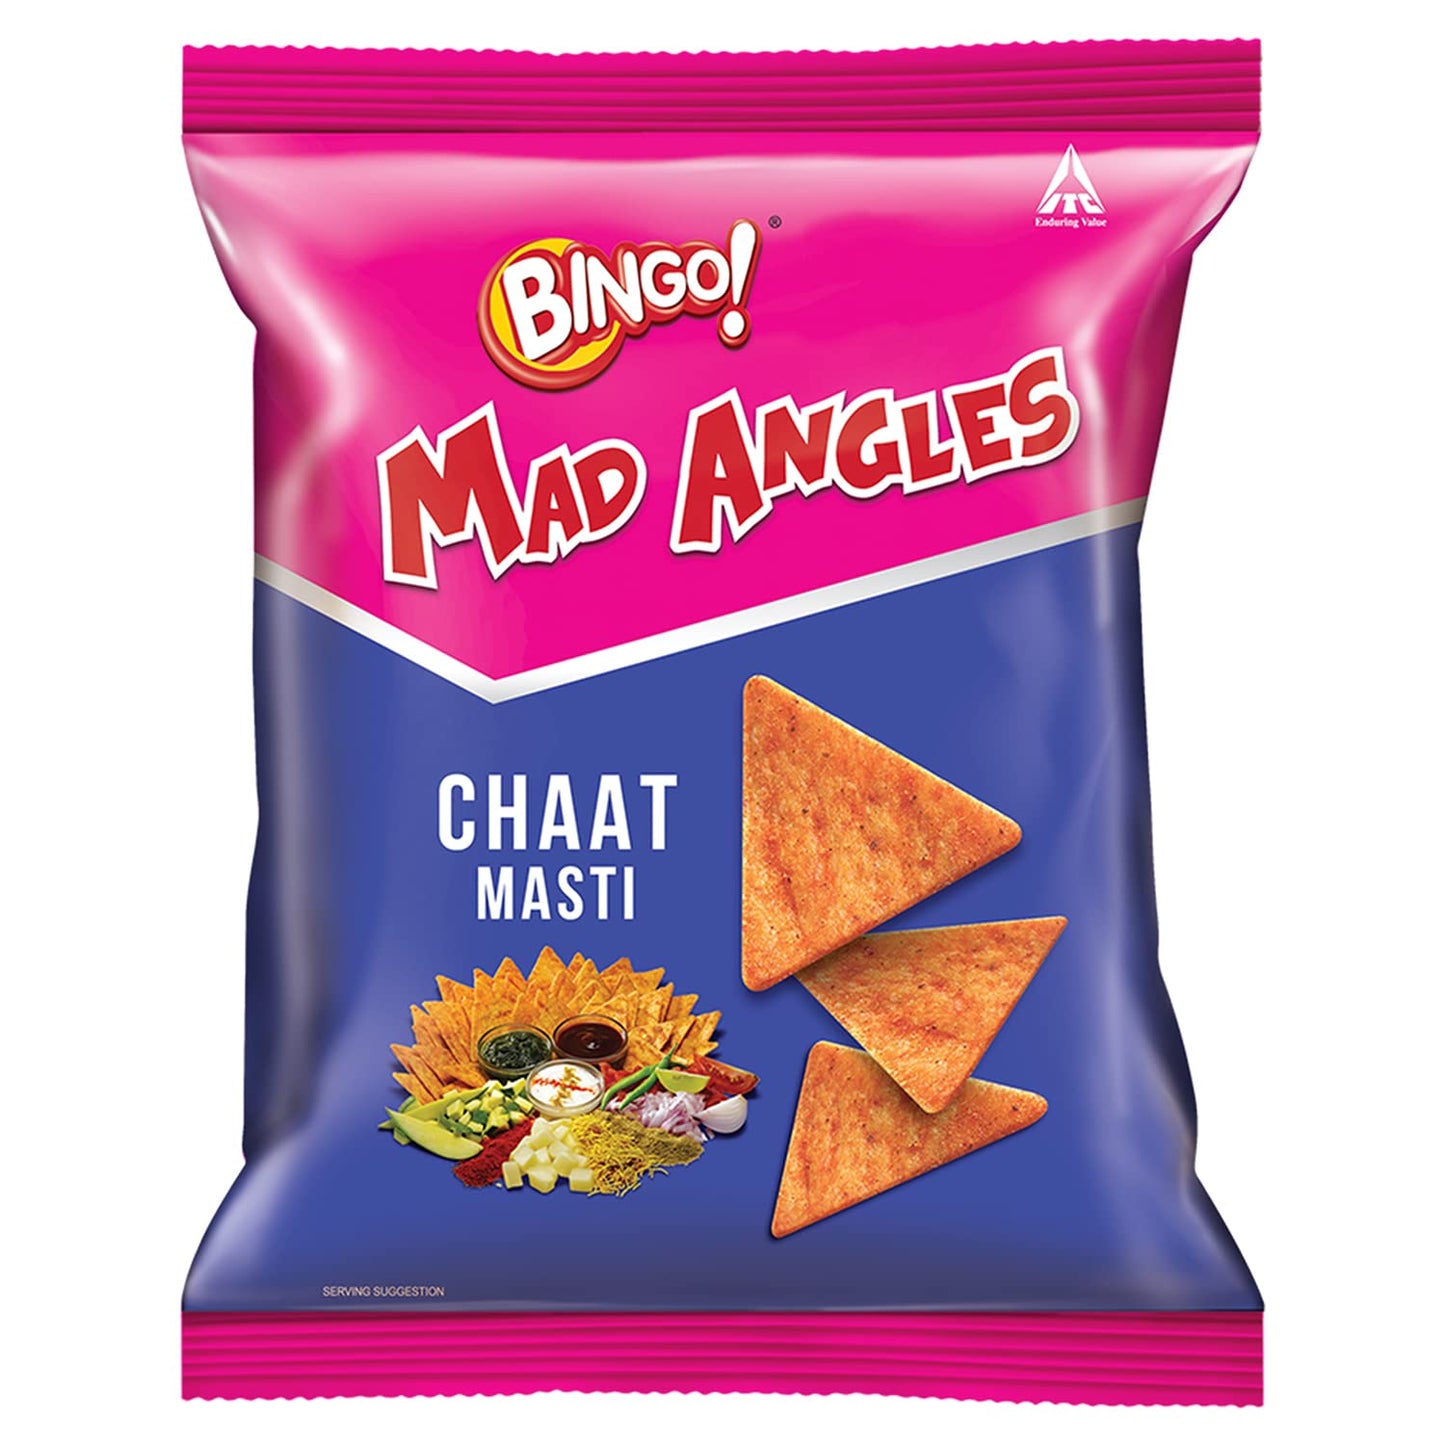 Bingo! Mad Angles Chaat Masti - 65g